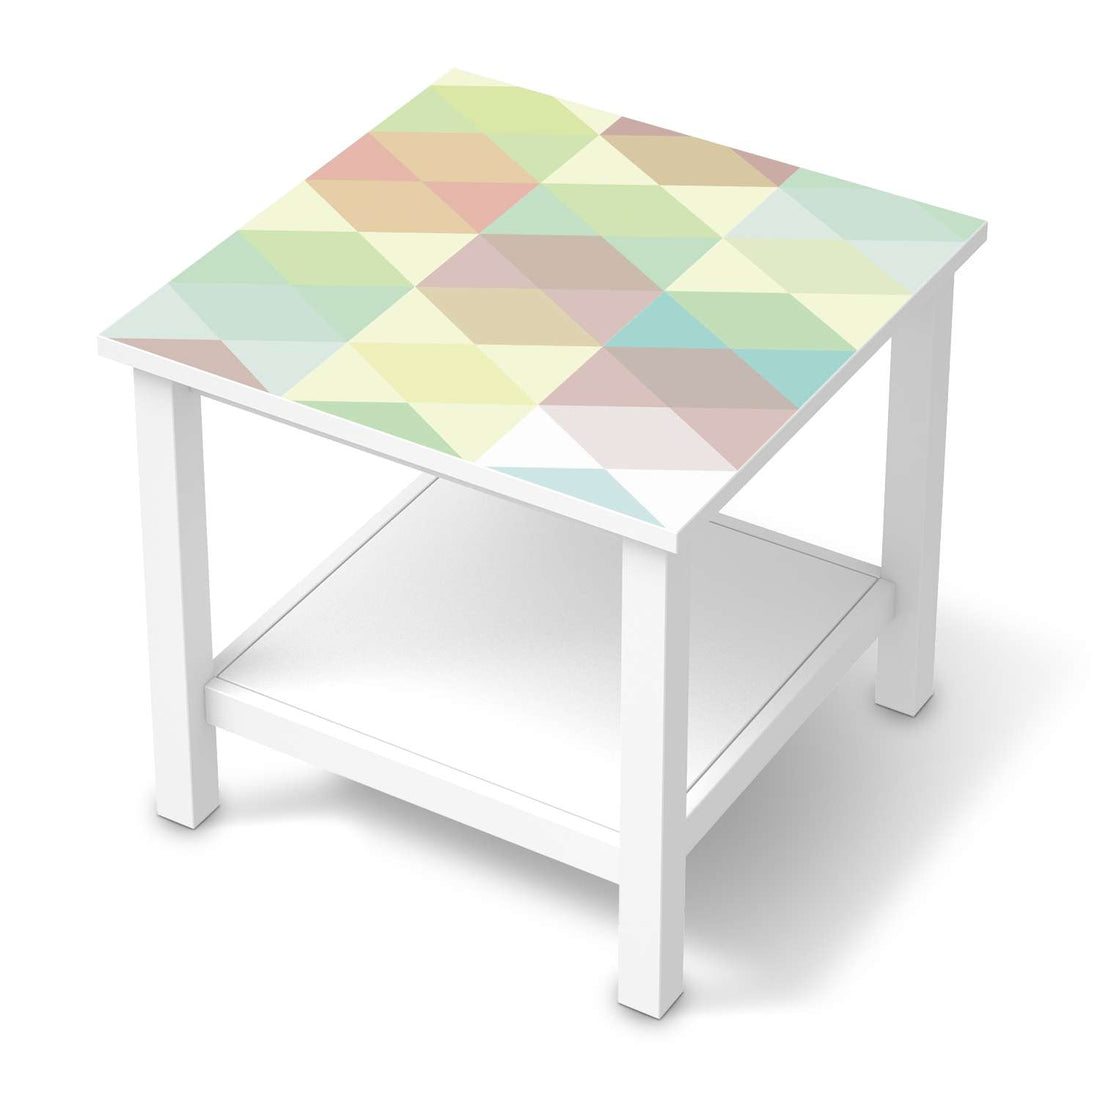 Möbel Klebefolie Melitta Pastell Geometrie - IKEA Hemnes Beistelltisch 55x55 cm  - weiss